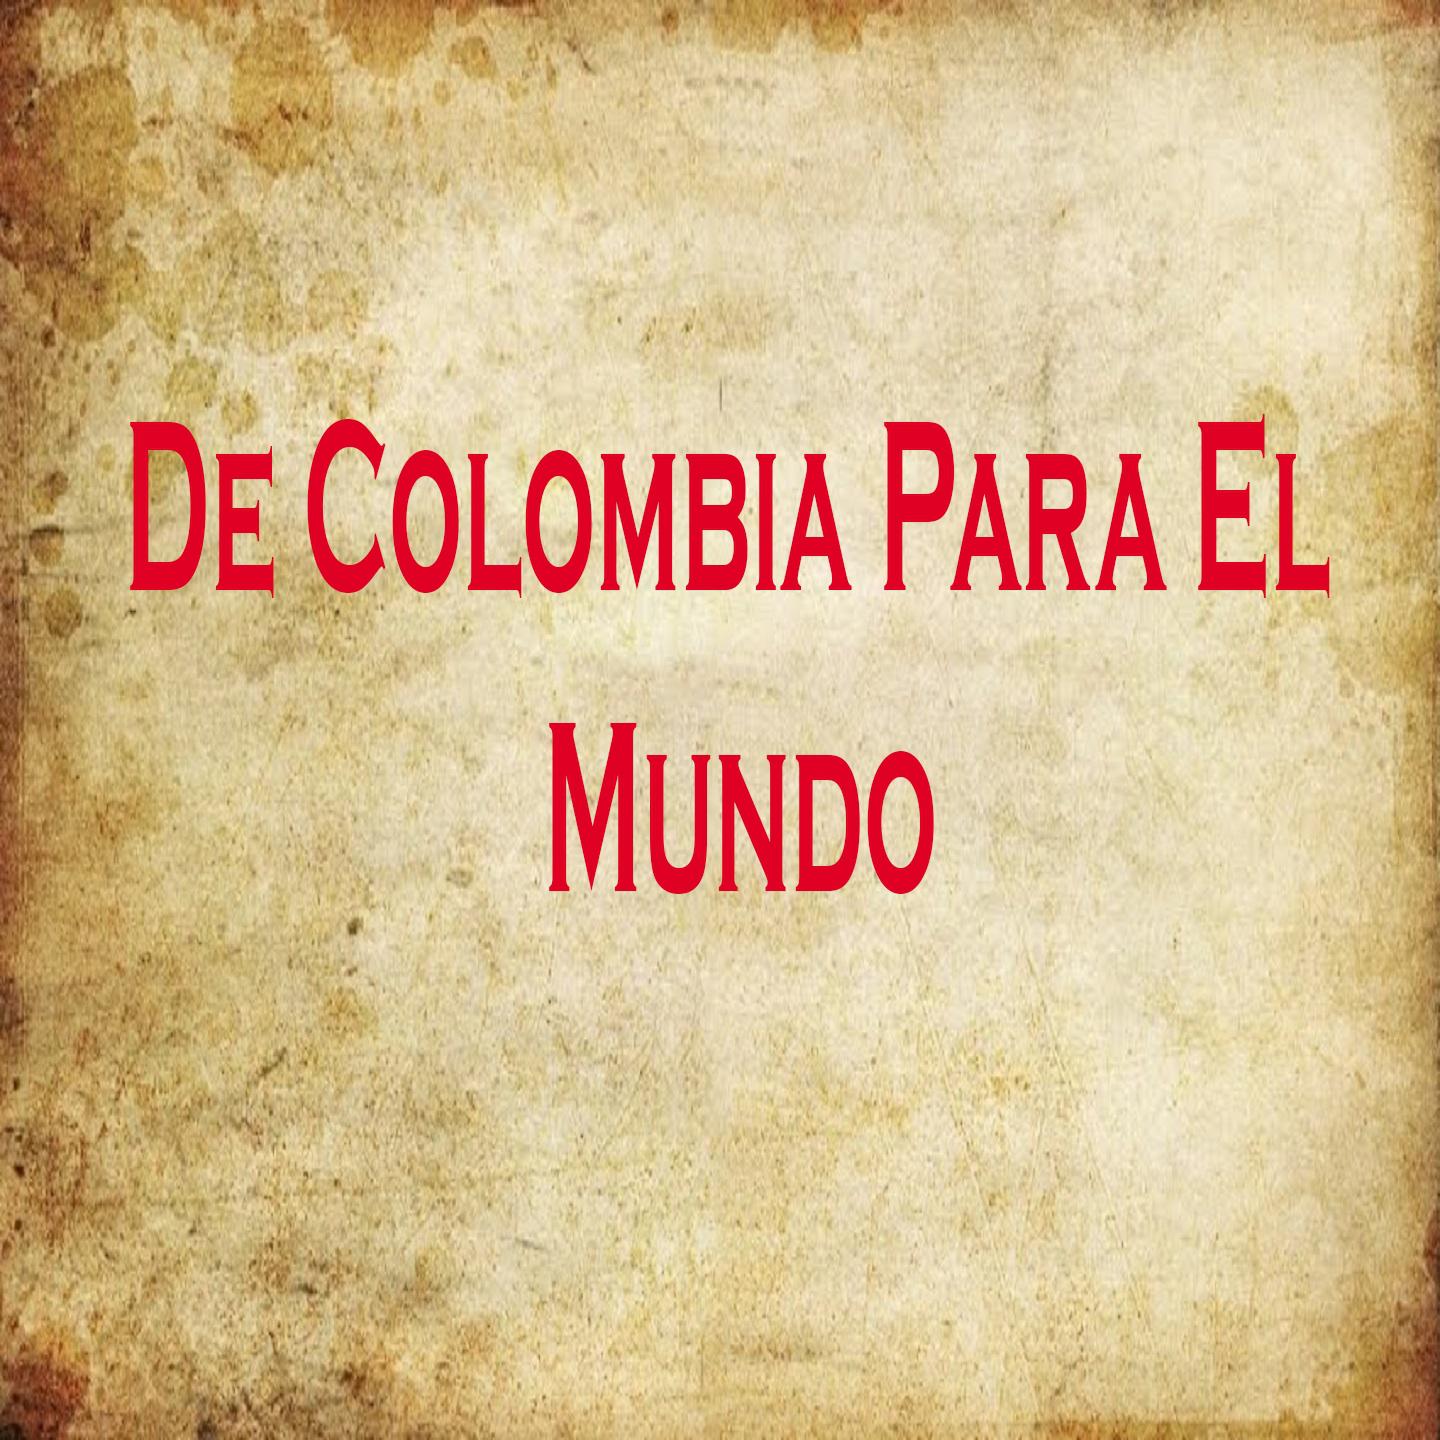 De Colombia para el Mundo